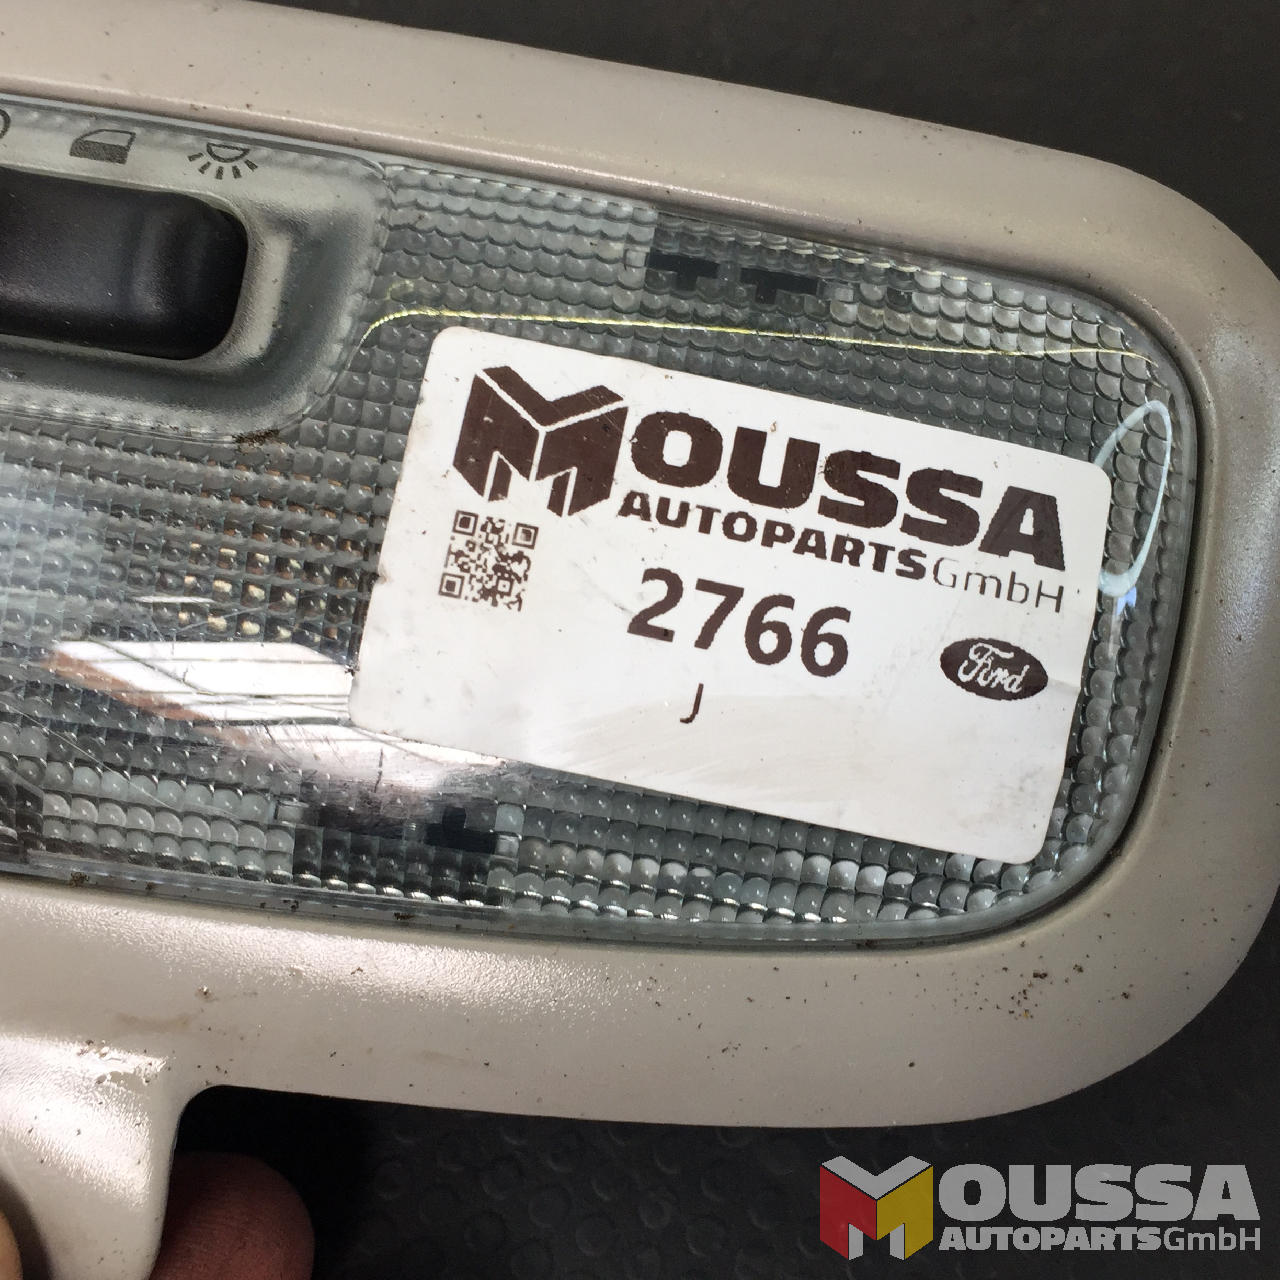 MOUSSA-AUTOPARTS-64675aa4844f2.jpg